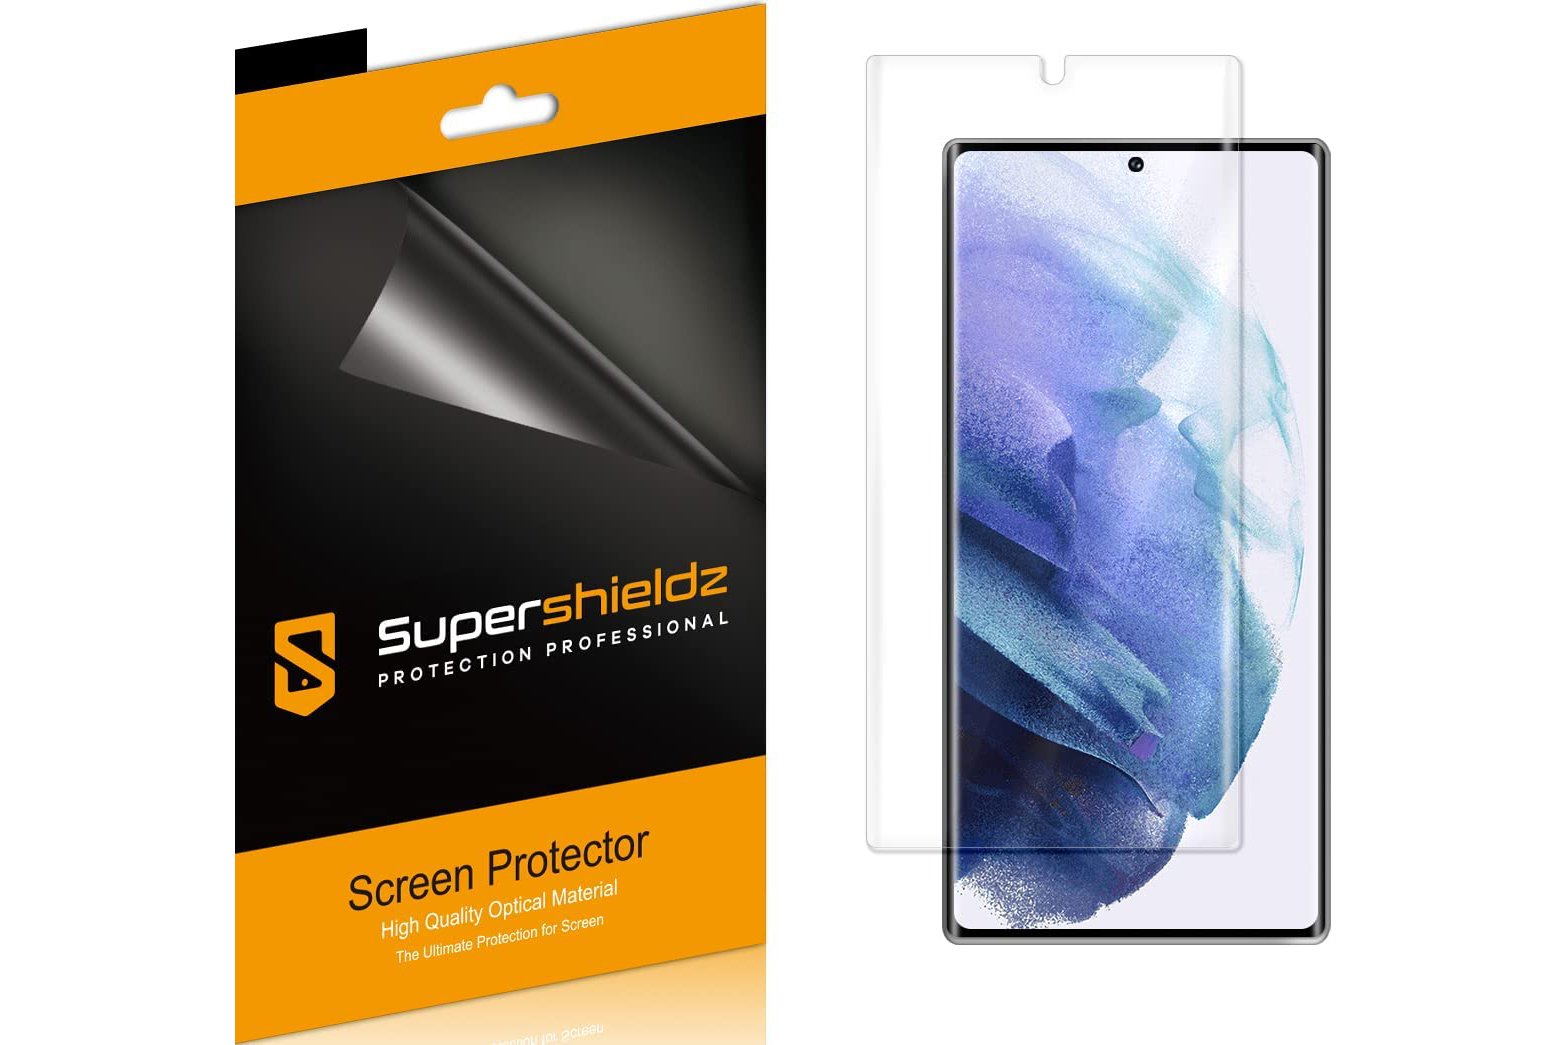 Caja de Supershieldz para Samsung Galaxy S22 Ultra que muestra el protector de pantalla de película en la pantalla del S22 Ultra.